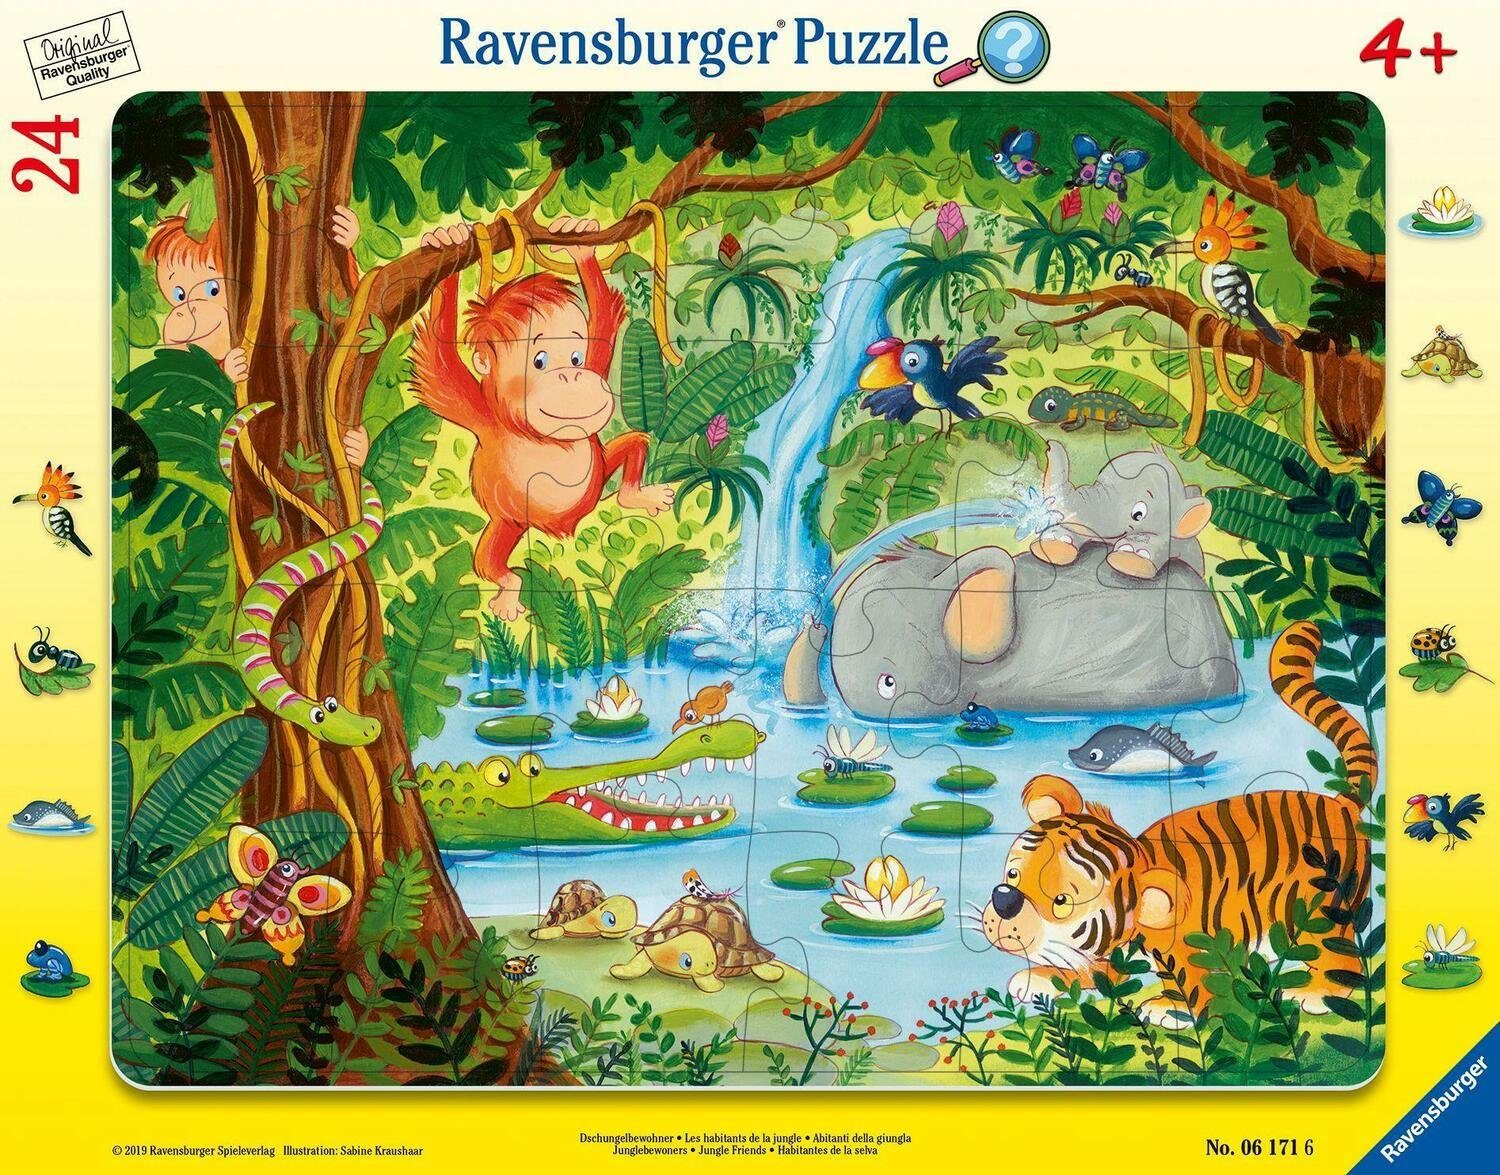 Ravensburger 24 Puzzle 24 Dschungelbewohner Puzzleteile - Puzzle Teilen, mit